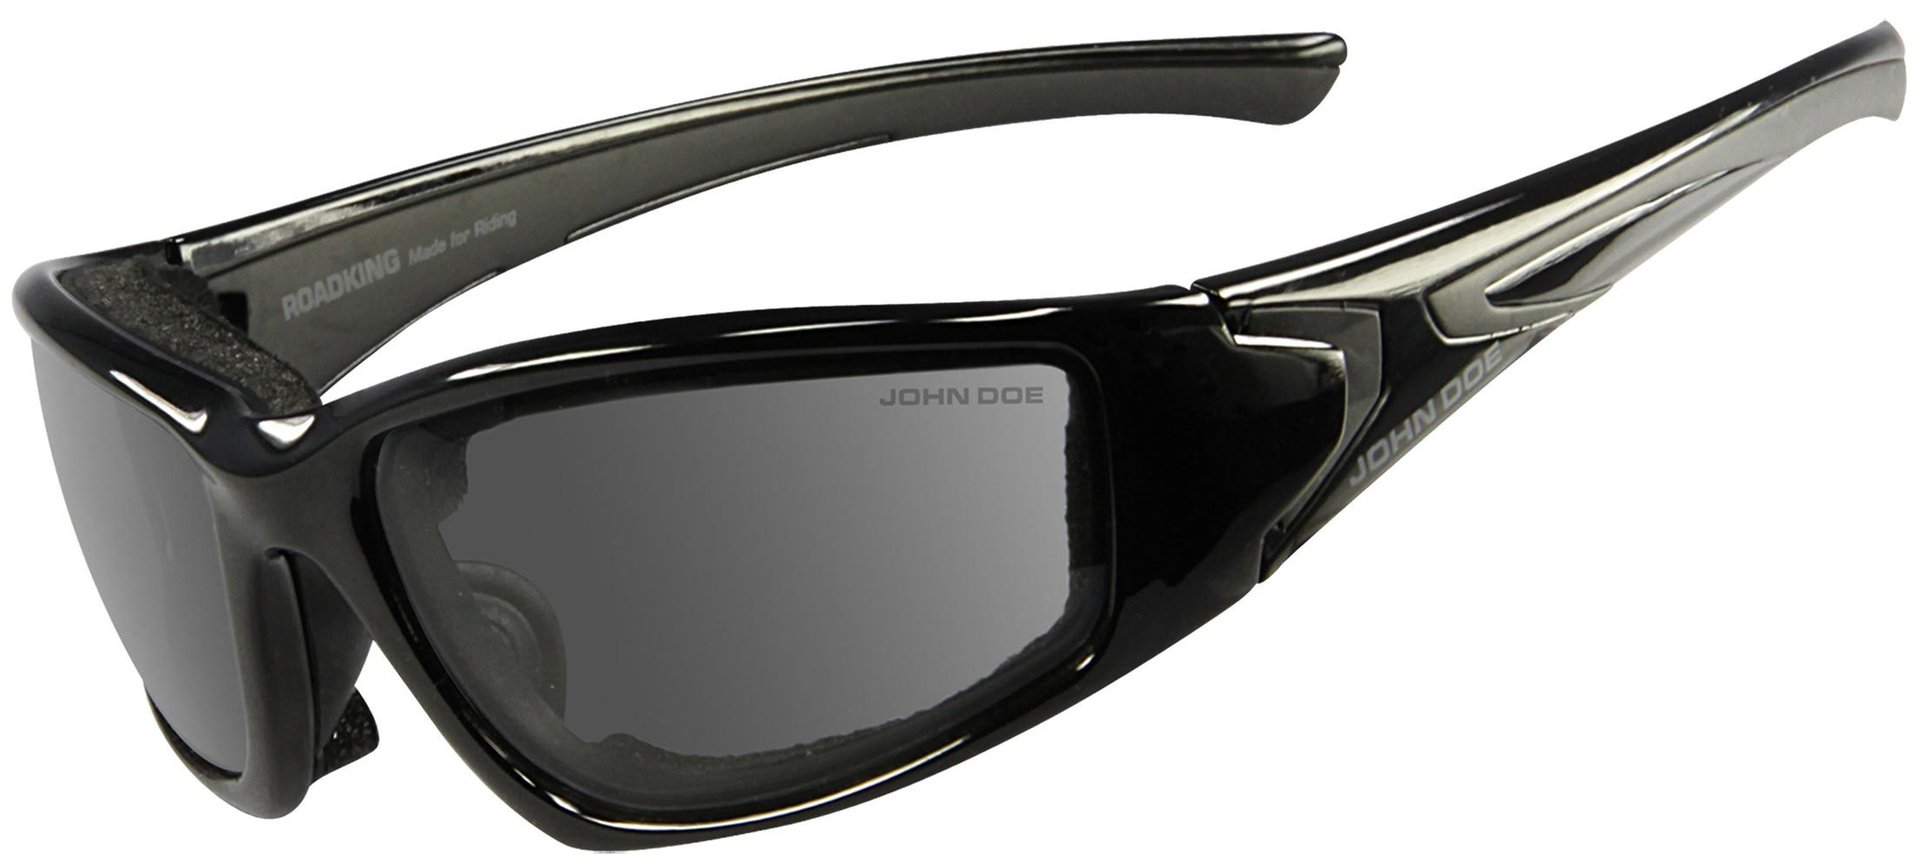 солнцезащитные очки розовый черный Очки John Doe Roadking Photocromatic солнцезащитные, черный